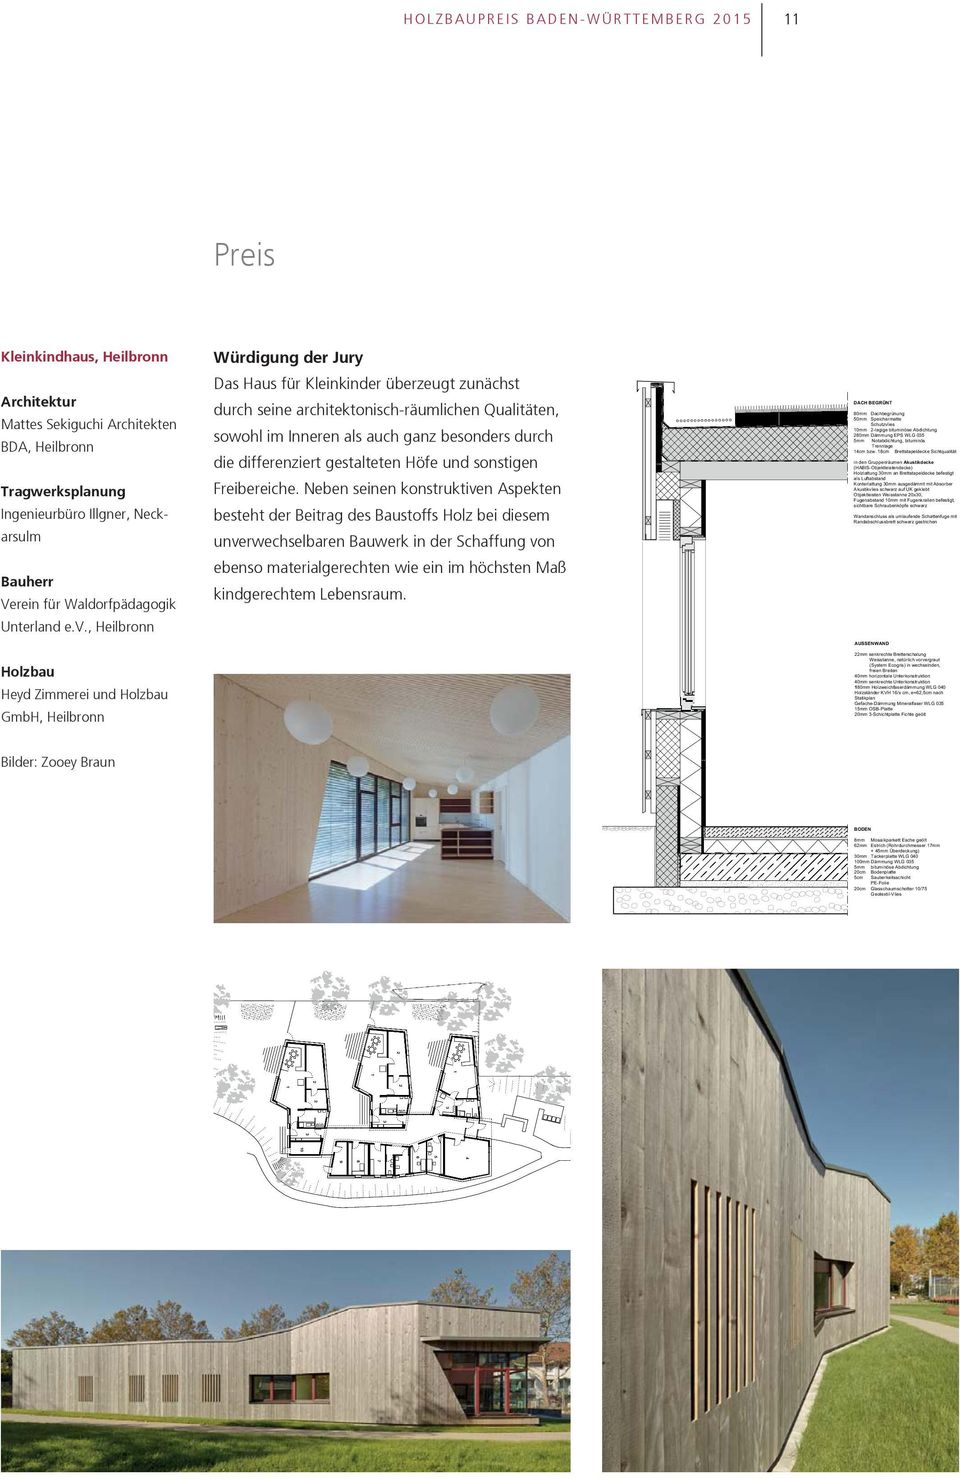 , Heilbronn Heyd Zimmerei und GmbH, Heilbronn Würdigung der Jury Das Haus für Kleinkinder überzeugt zunächst durch seine architektonisch-räumlichen Qualitäten, sowohl im